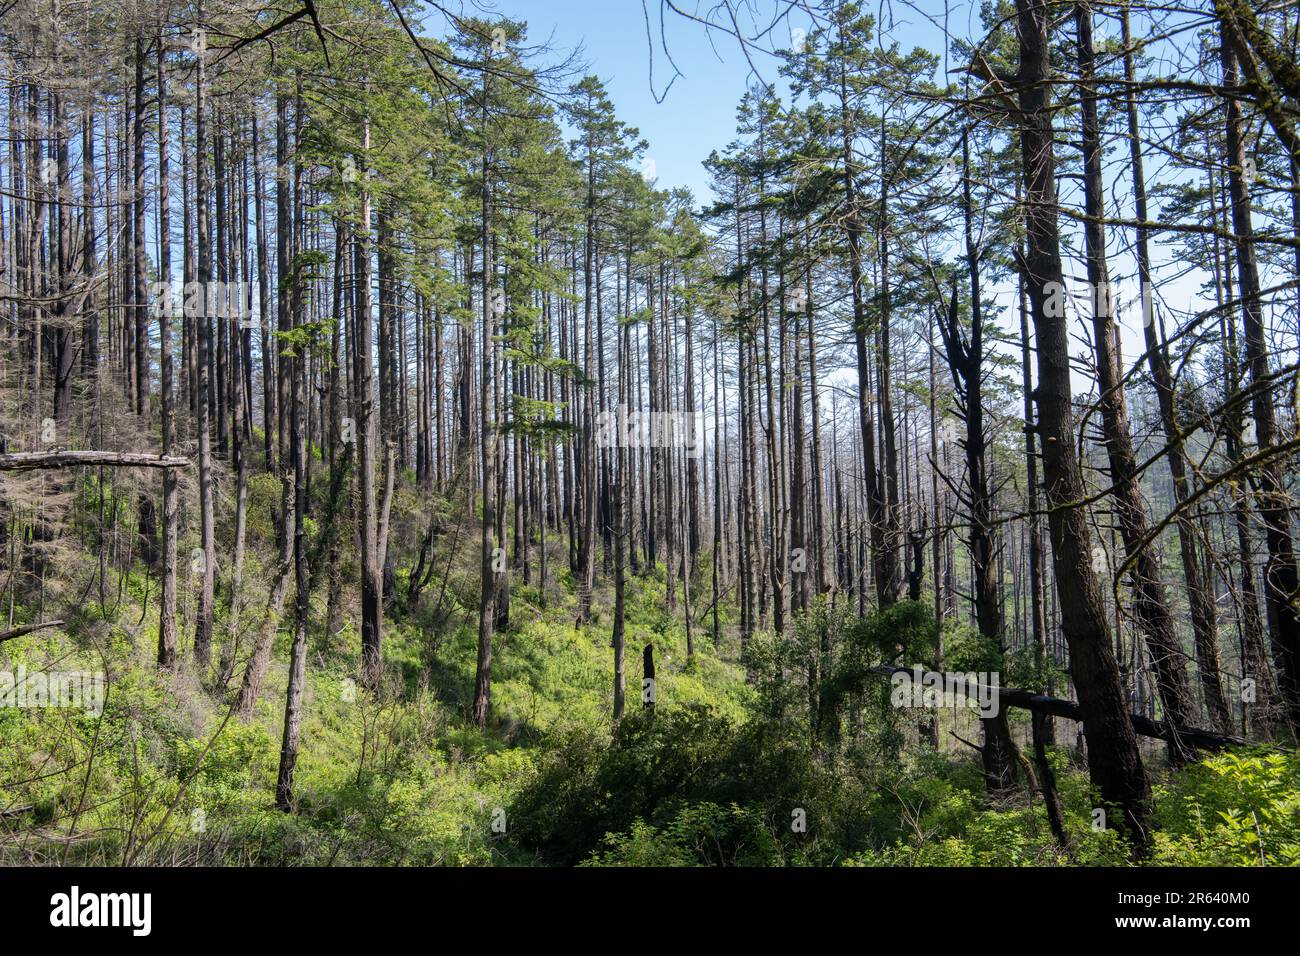 Nach dem Waldbrand in Point Reyes beginnt sich die Umwelt zu erholen, aber die verkohlten Bäume bleiben. Aufgenommen in Kalifornien, USA. Stockfoto